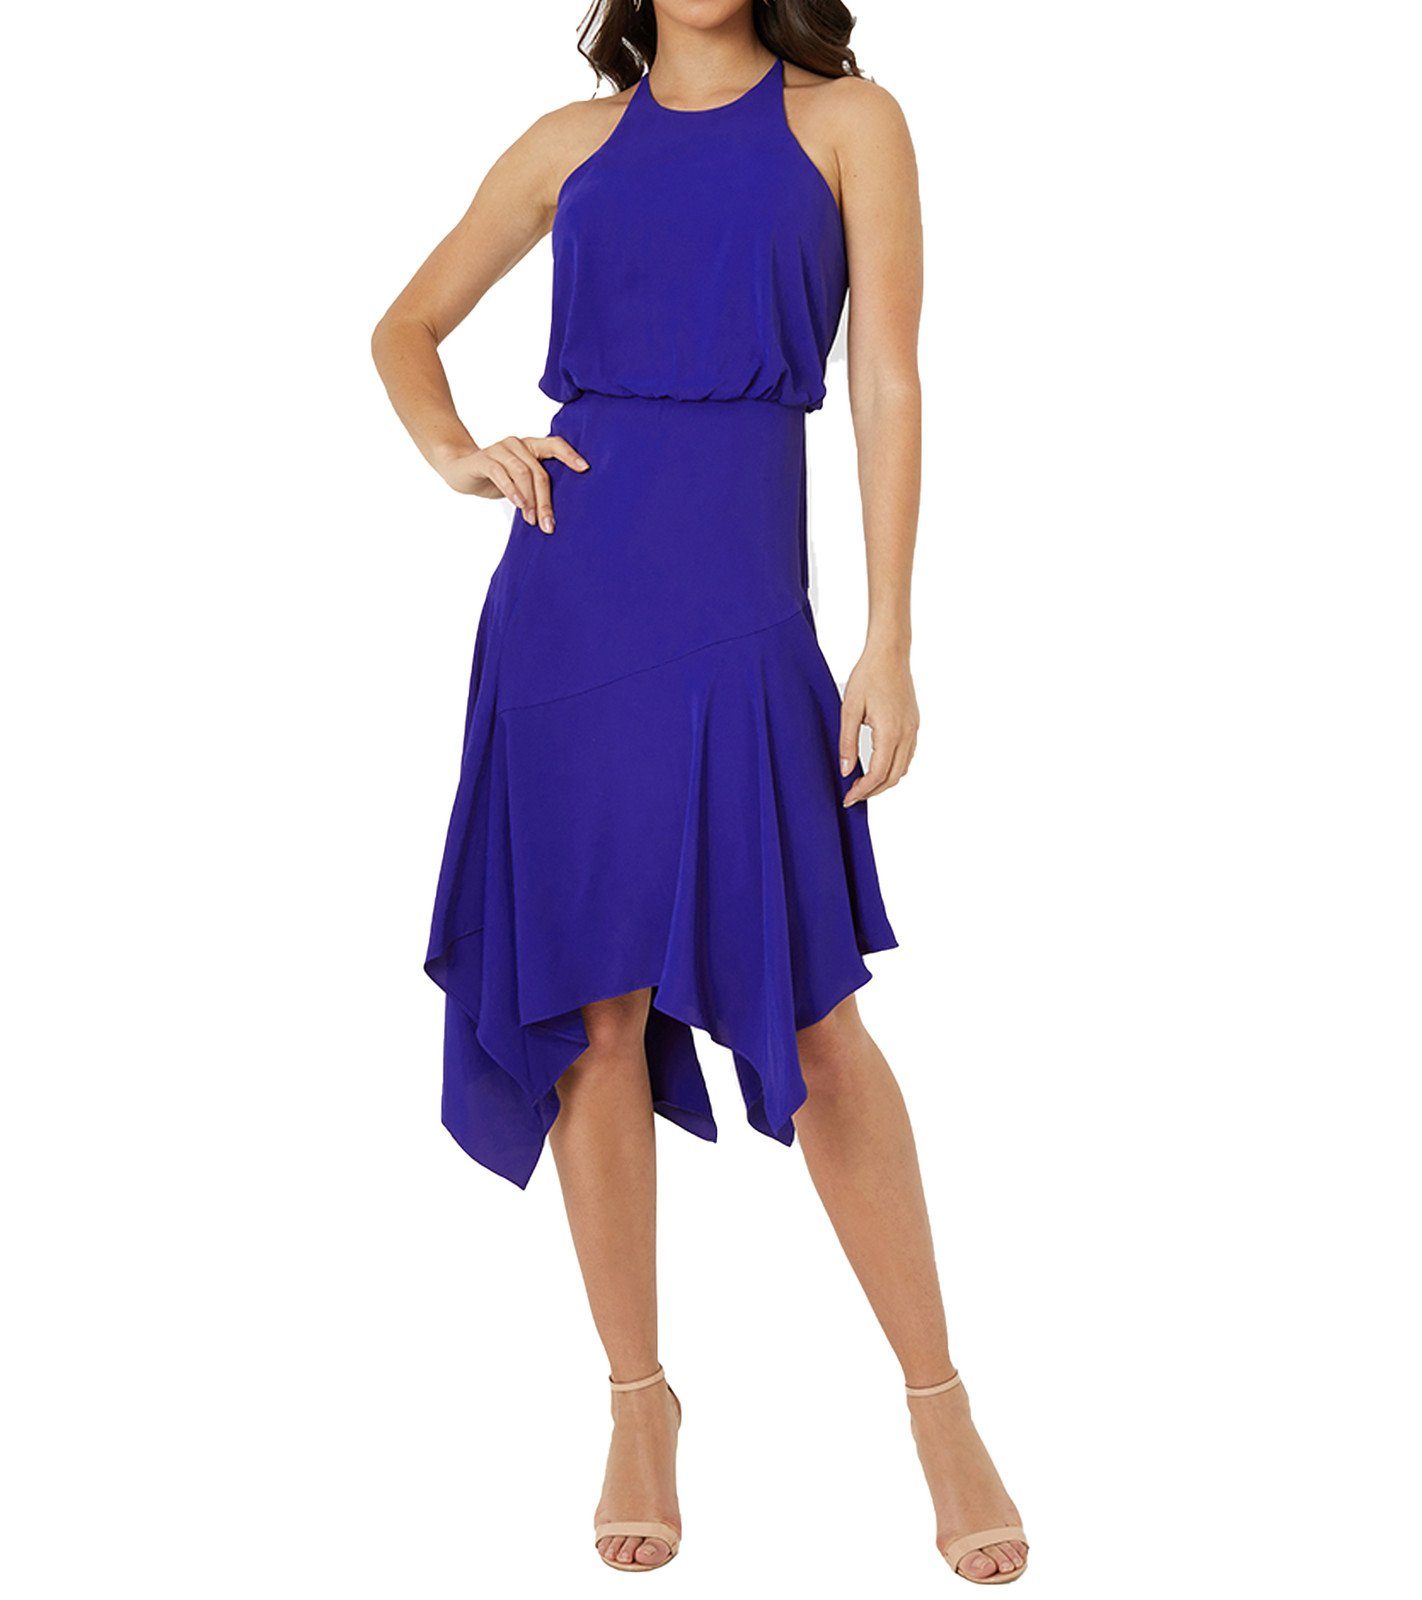 LIPSY Sommerkleid »LIPSY LONDON Kleid stylisches Damen Mini-Kleid in  Lagenoptik Sommer-Kleid Blau« online kaufen | OTTO